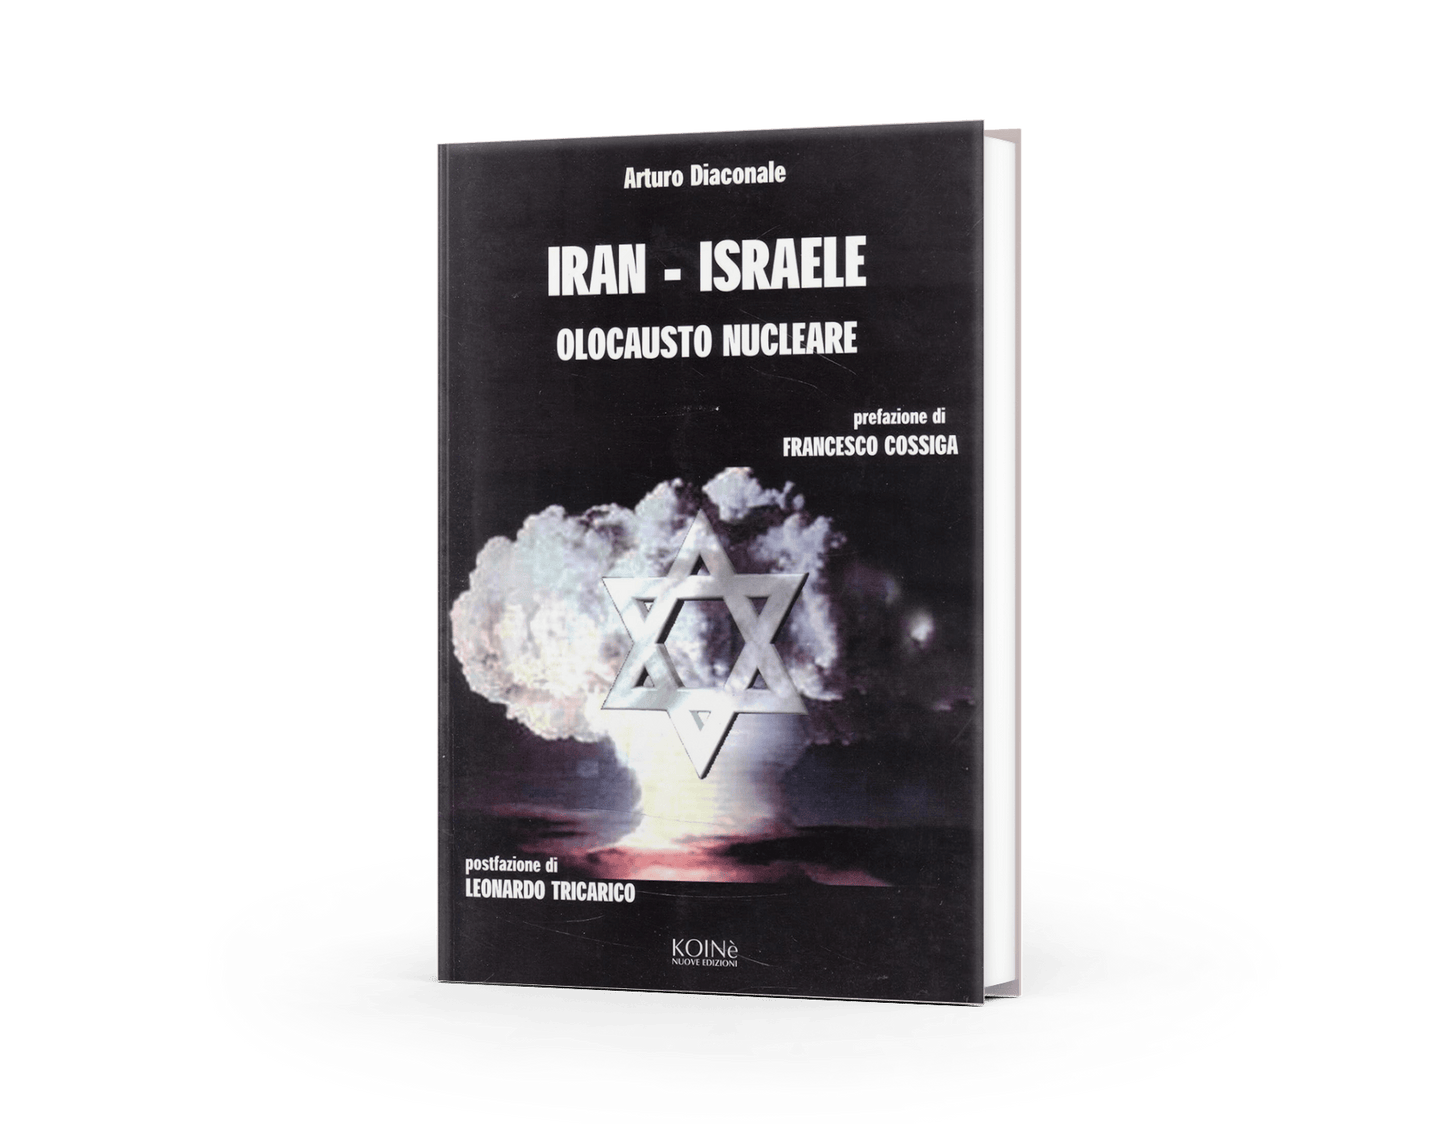 Iran-Israele: olocausto nucleare